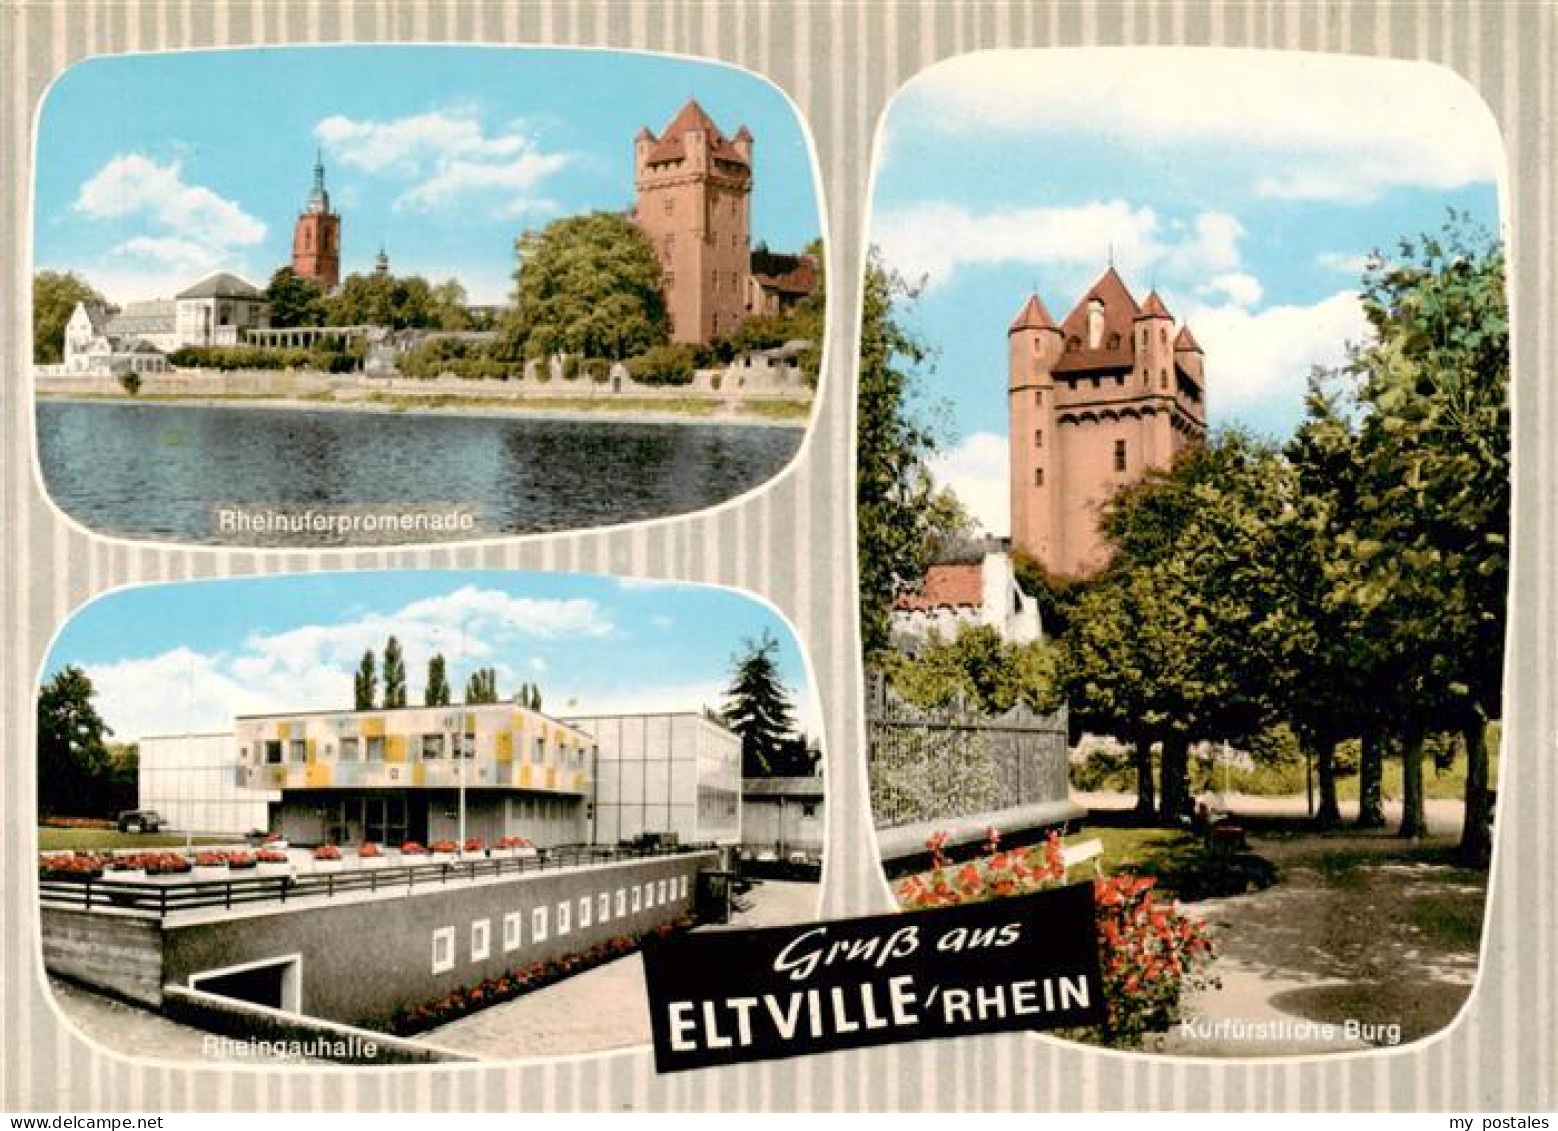 73935891 Eltville_Rhein Rheinuferpromenade Rheingauhalle Kurfuerstliche Burg - Eltville